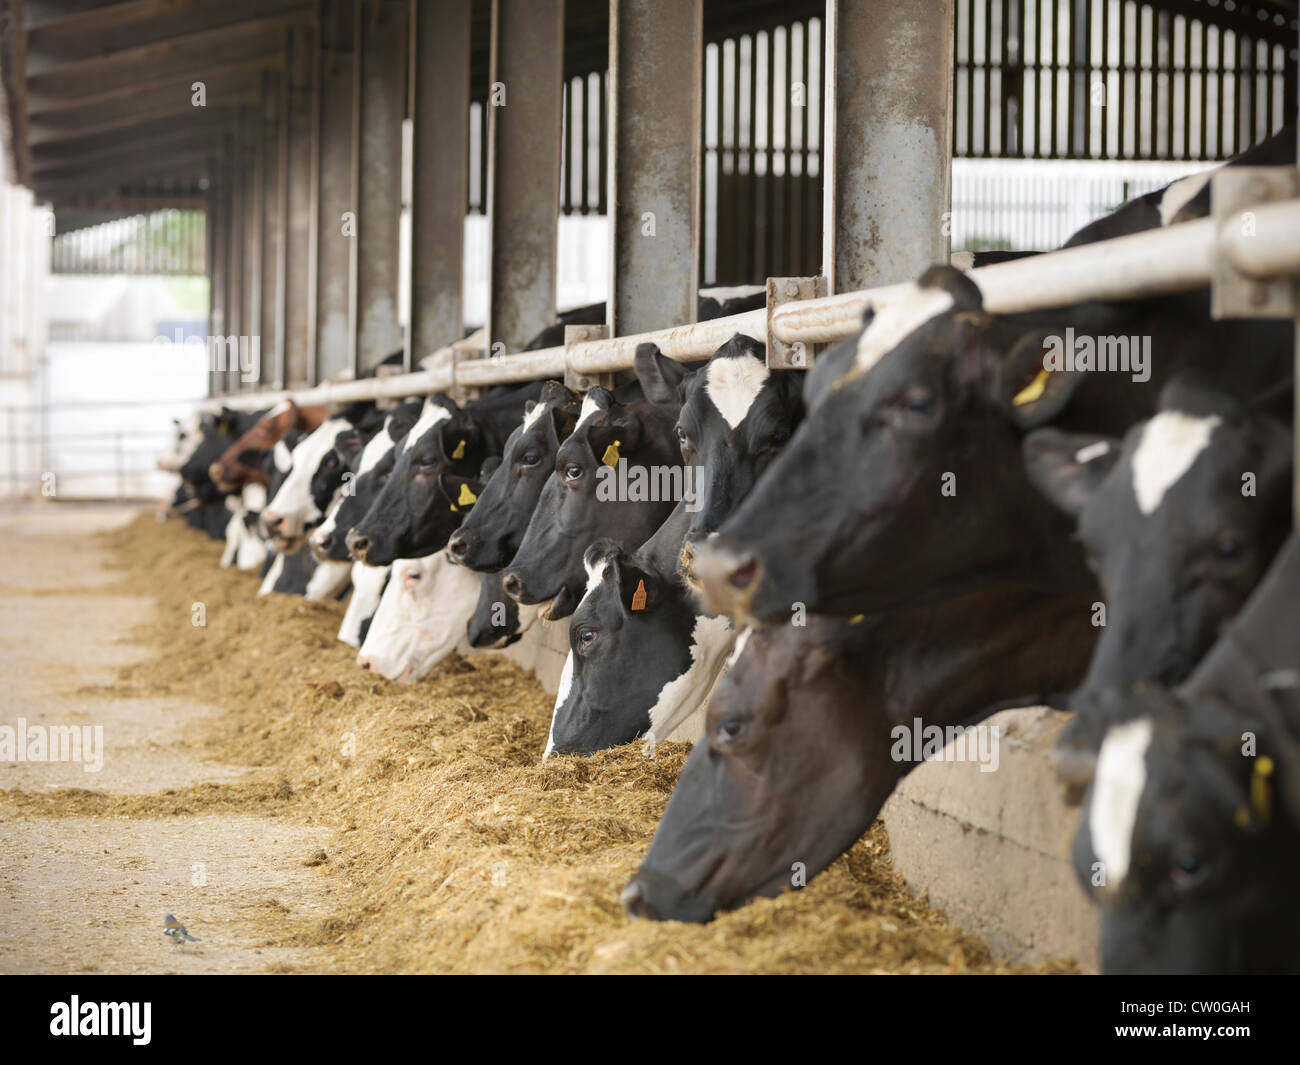 Las vacas comen heno en el granero Foto de stock